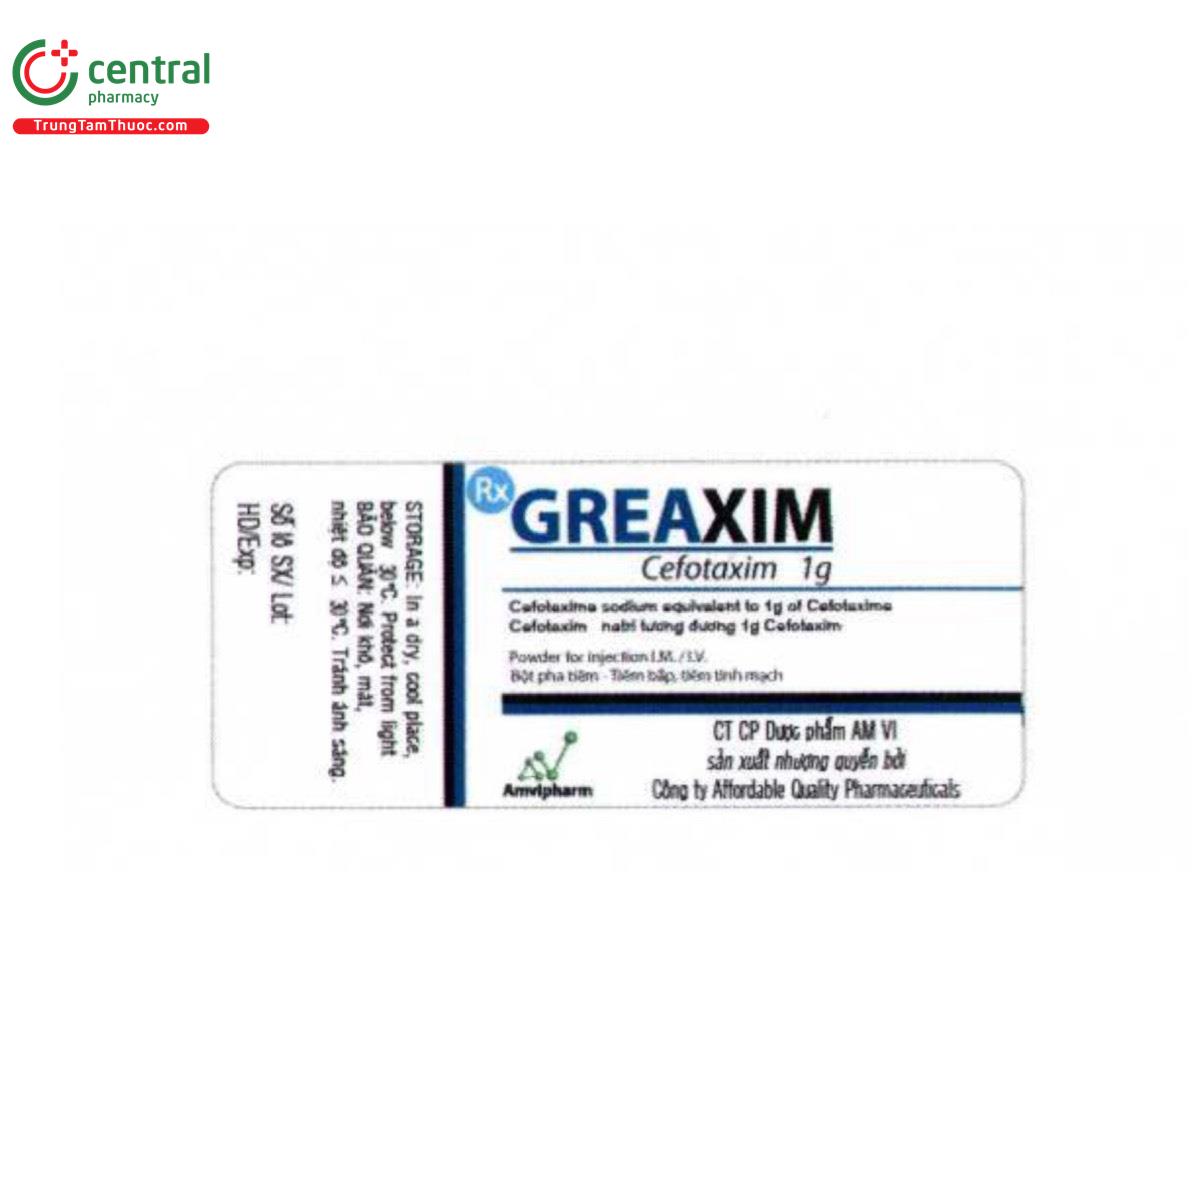 greaxim 1g 5 C1456